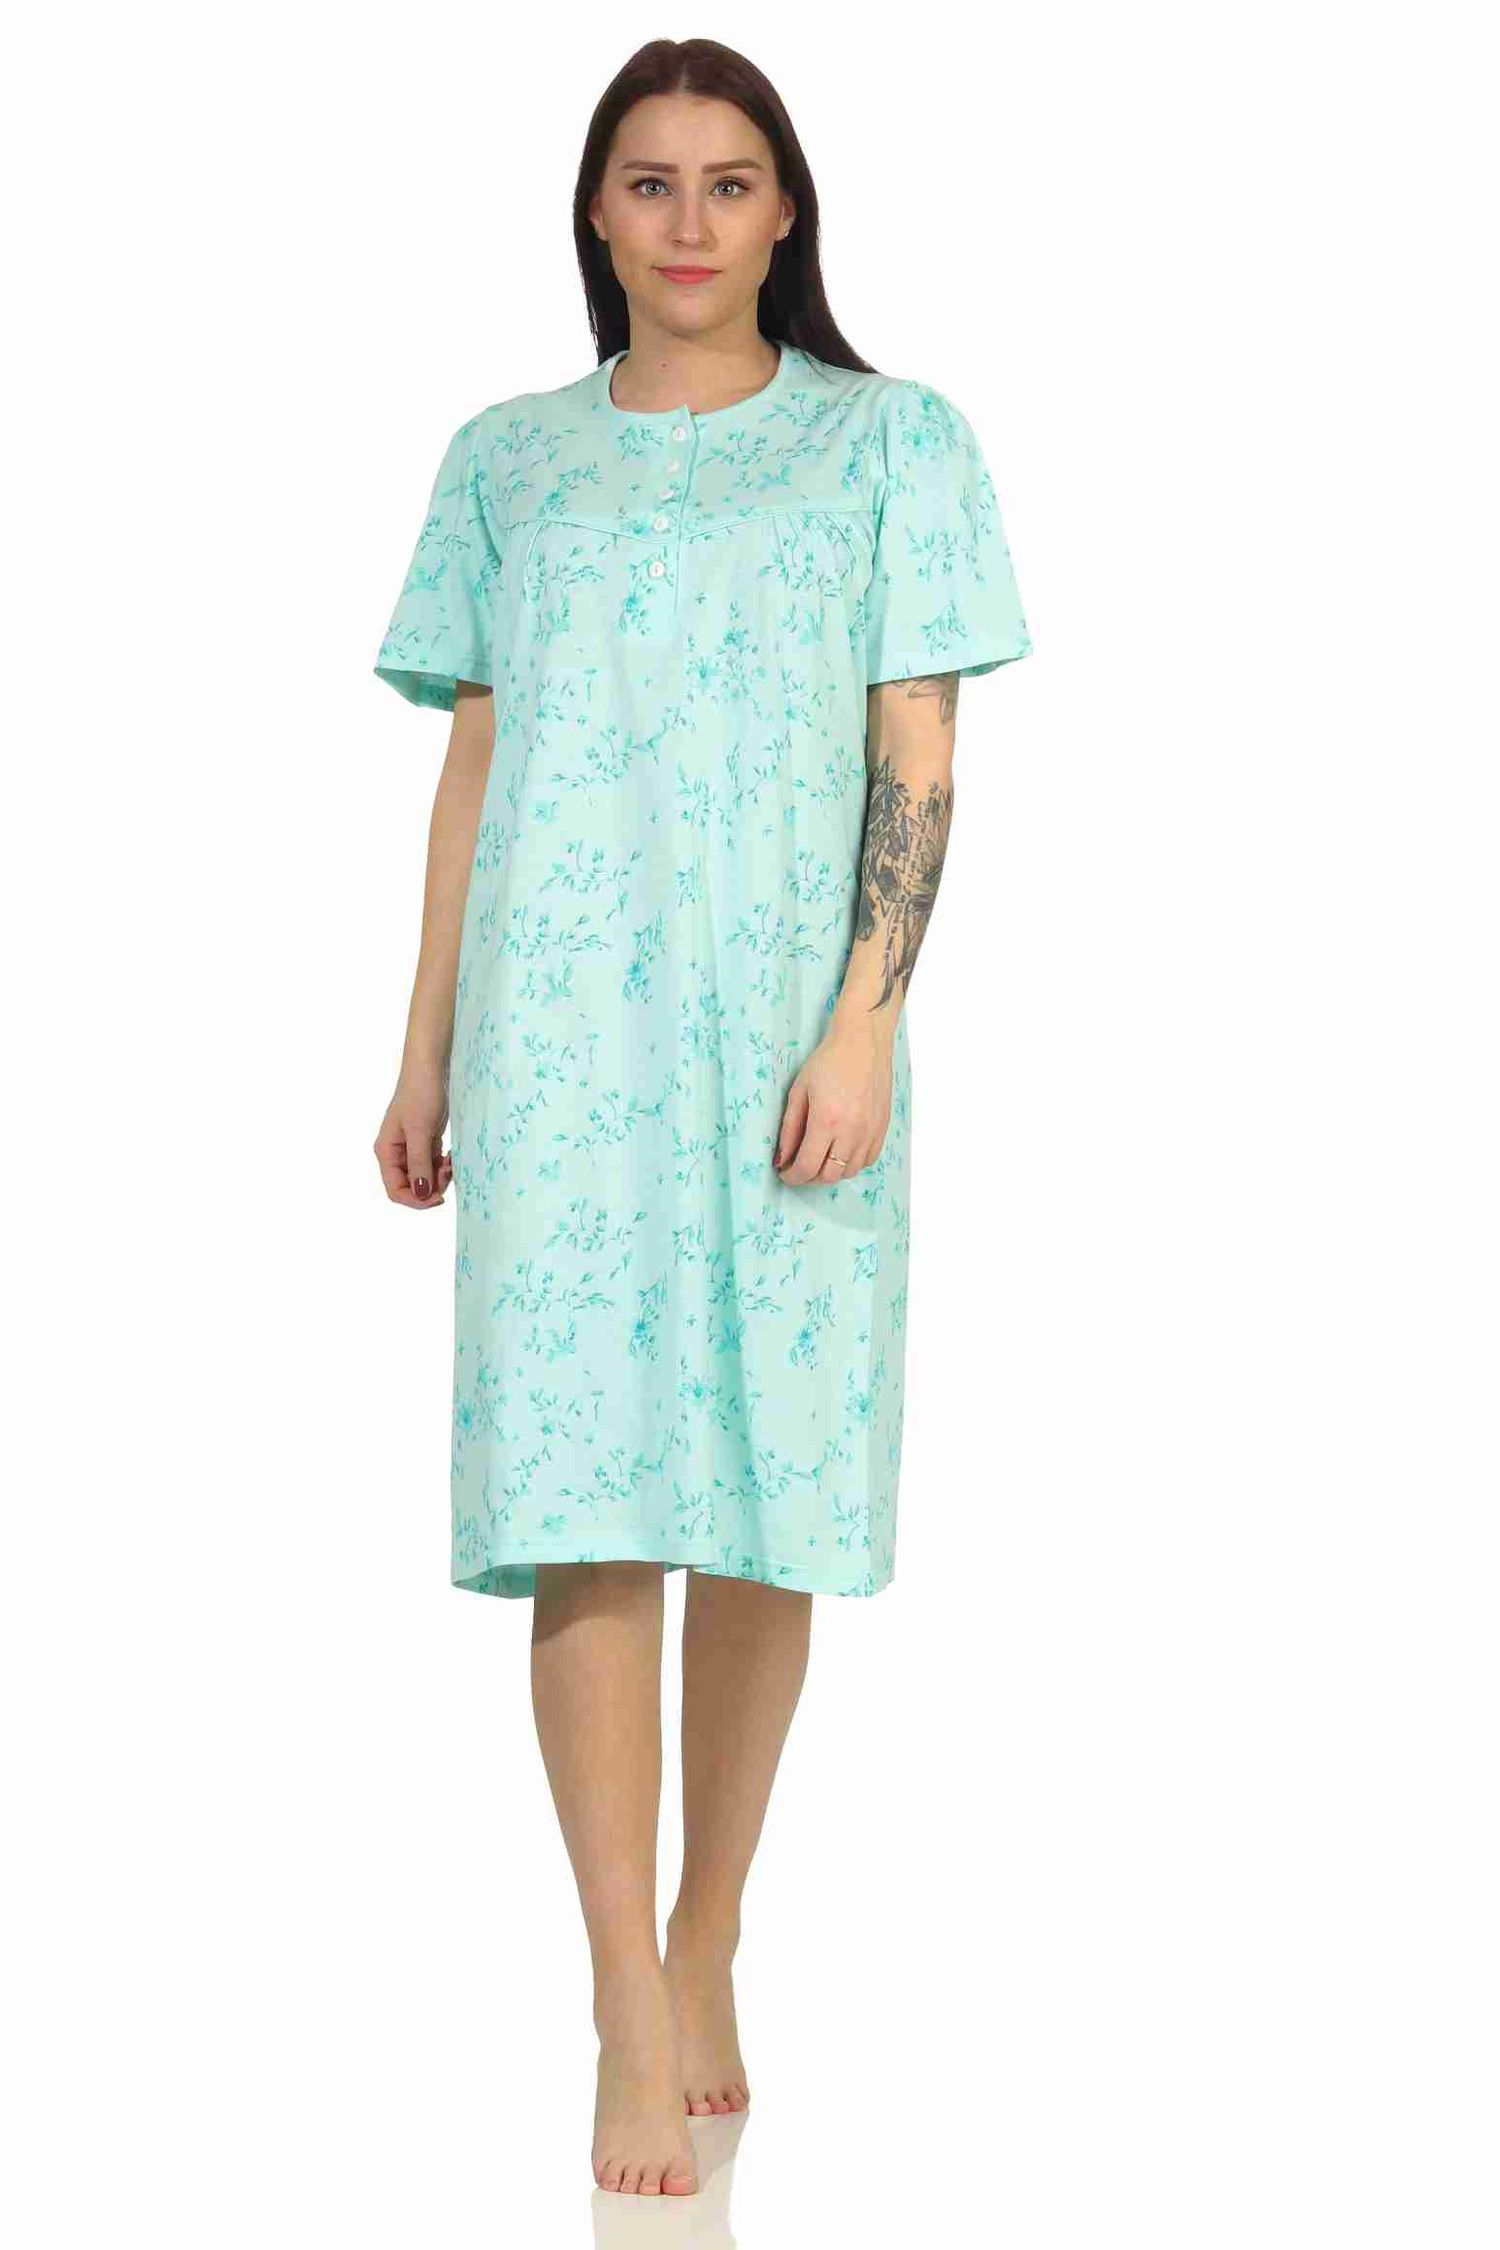 Frauliches Damen Nachthemd mit Knopfleiste in 105 cm Länge